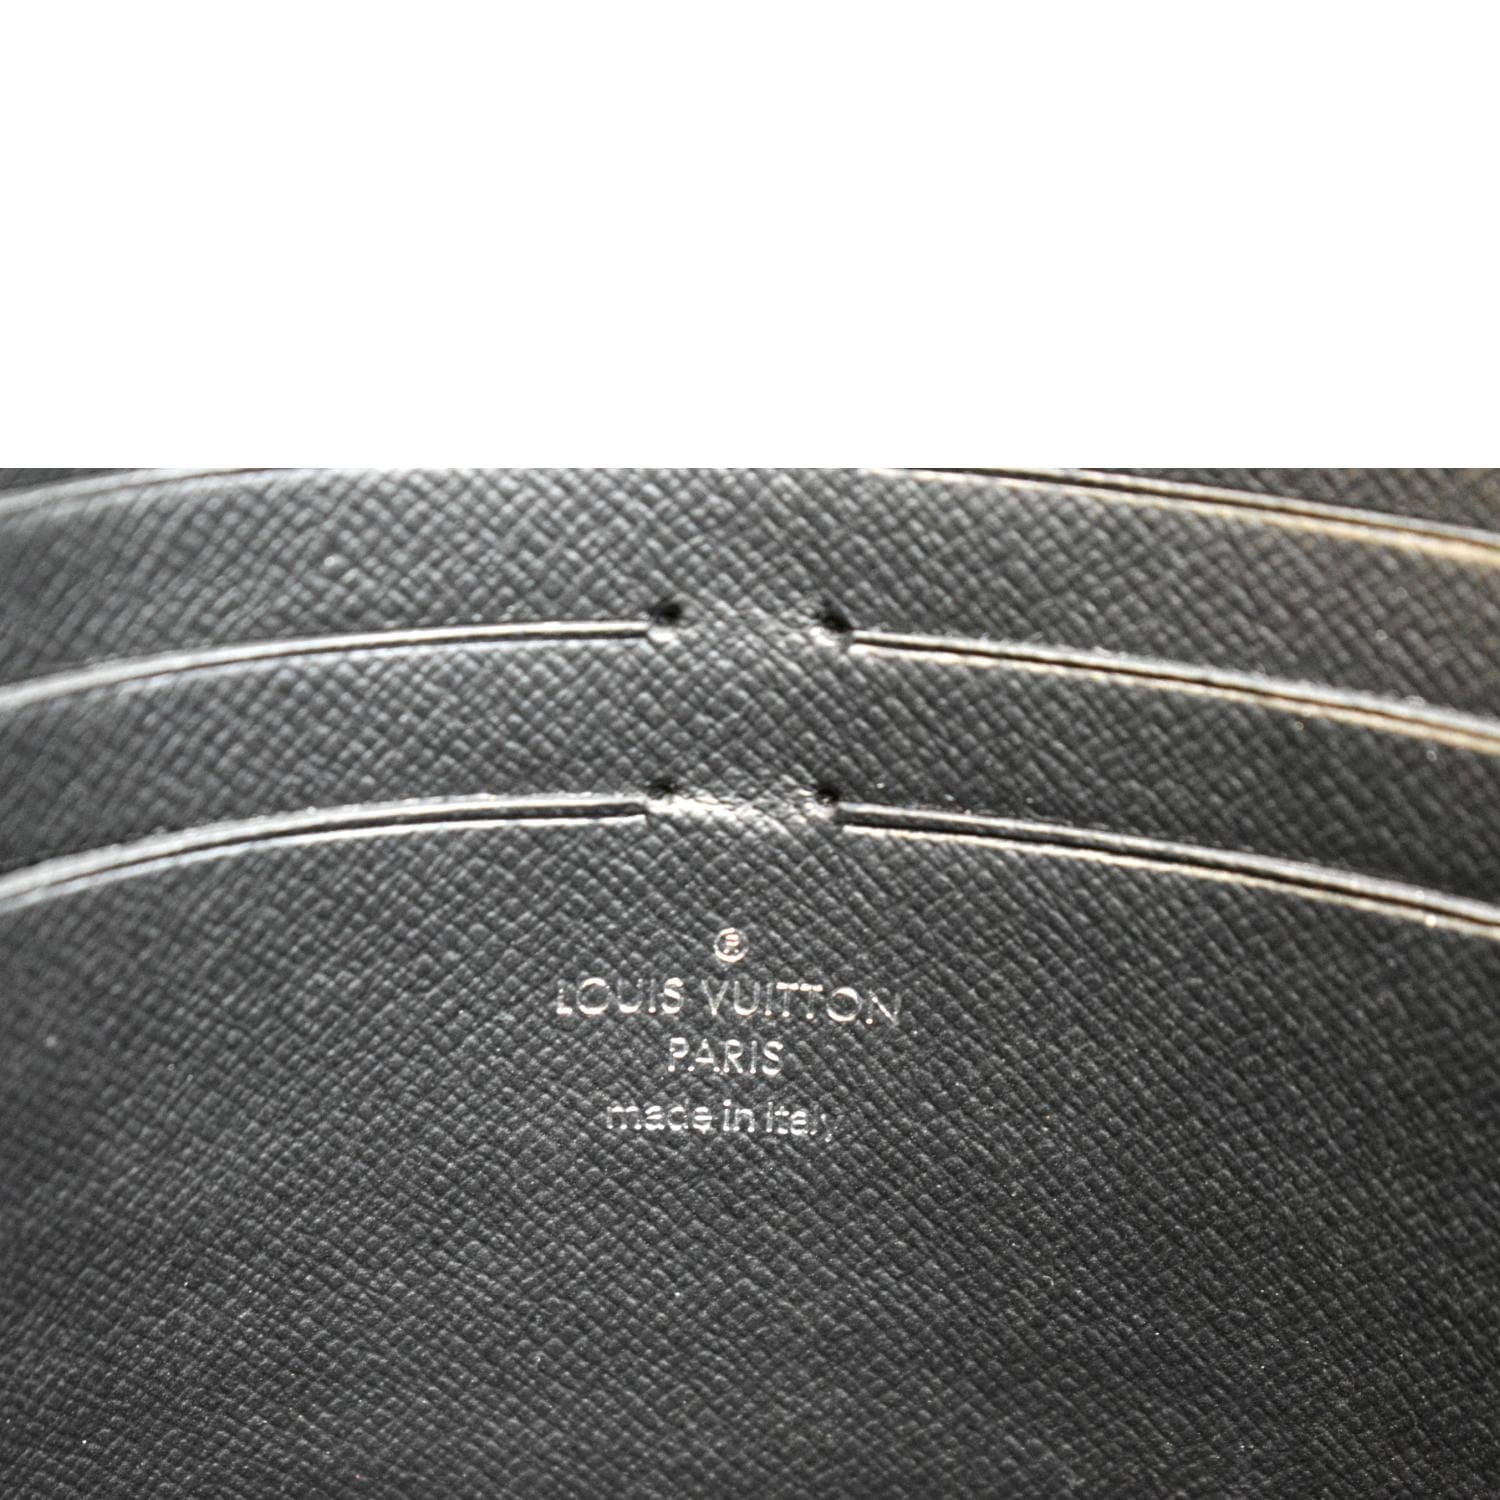 Louis Vuitton Pochette Voyage Souple Eclipse